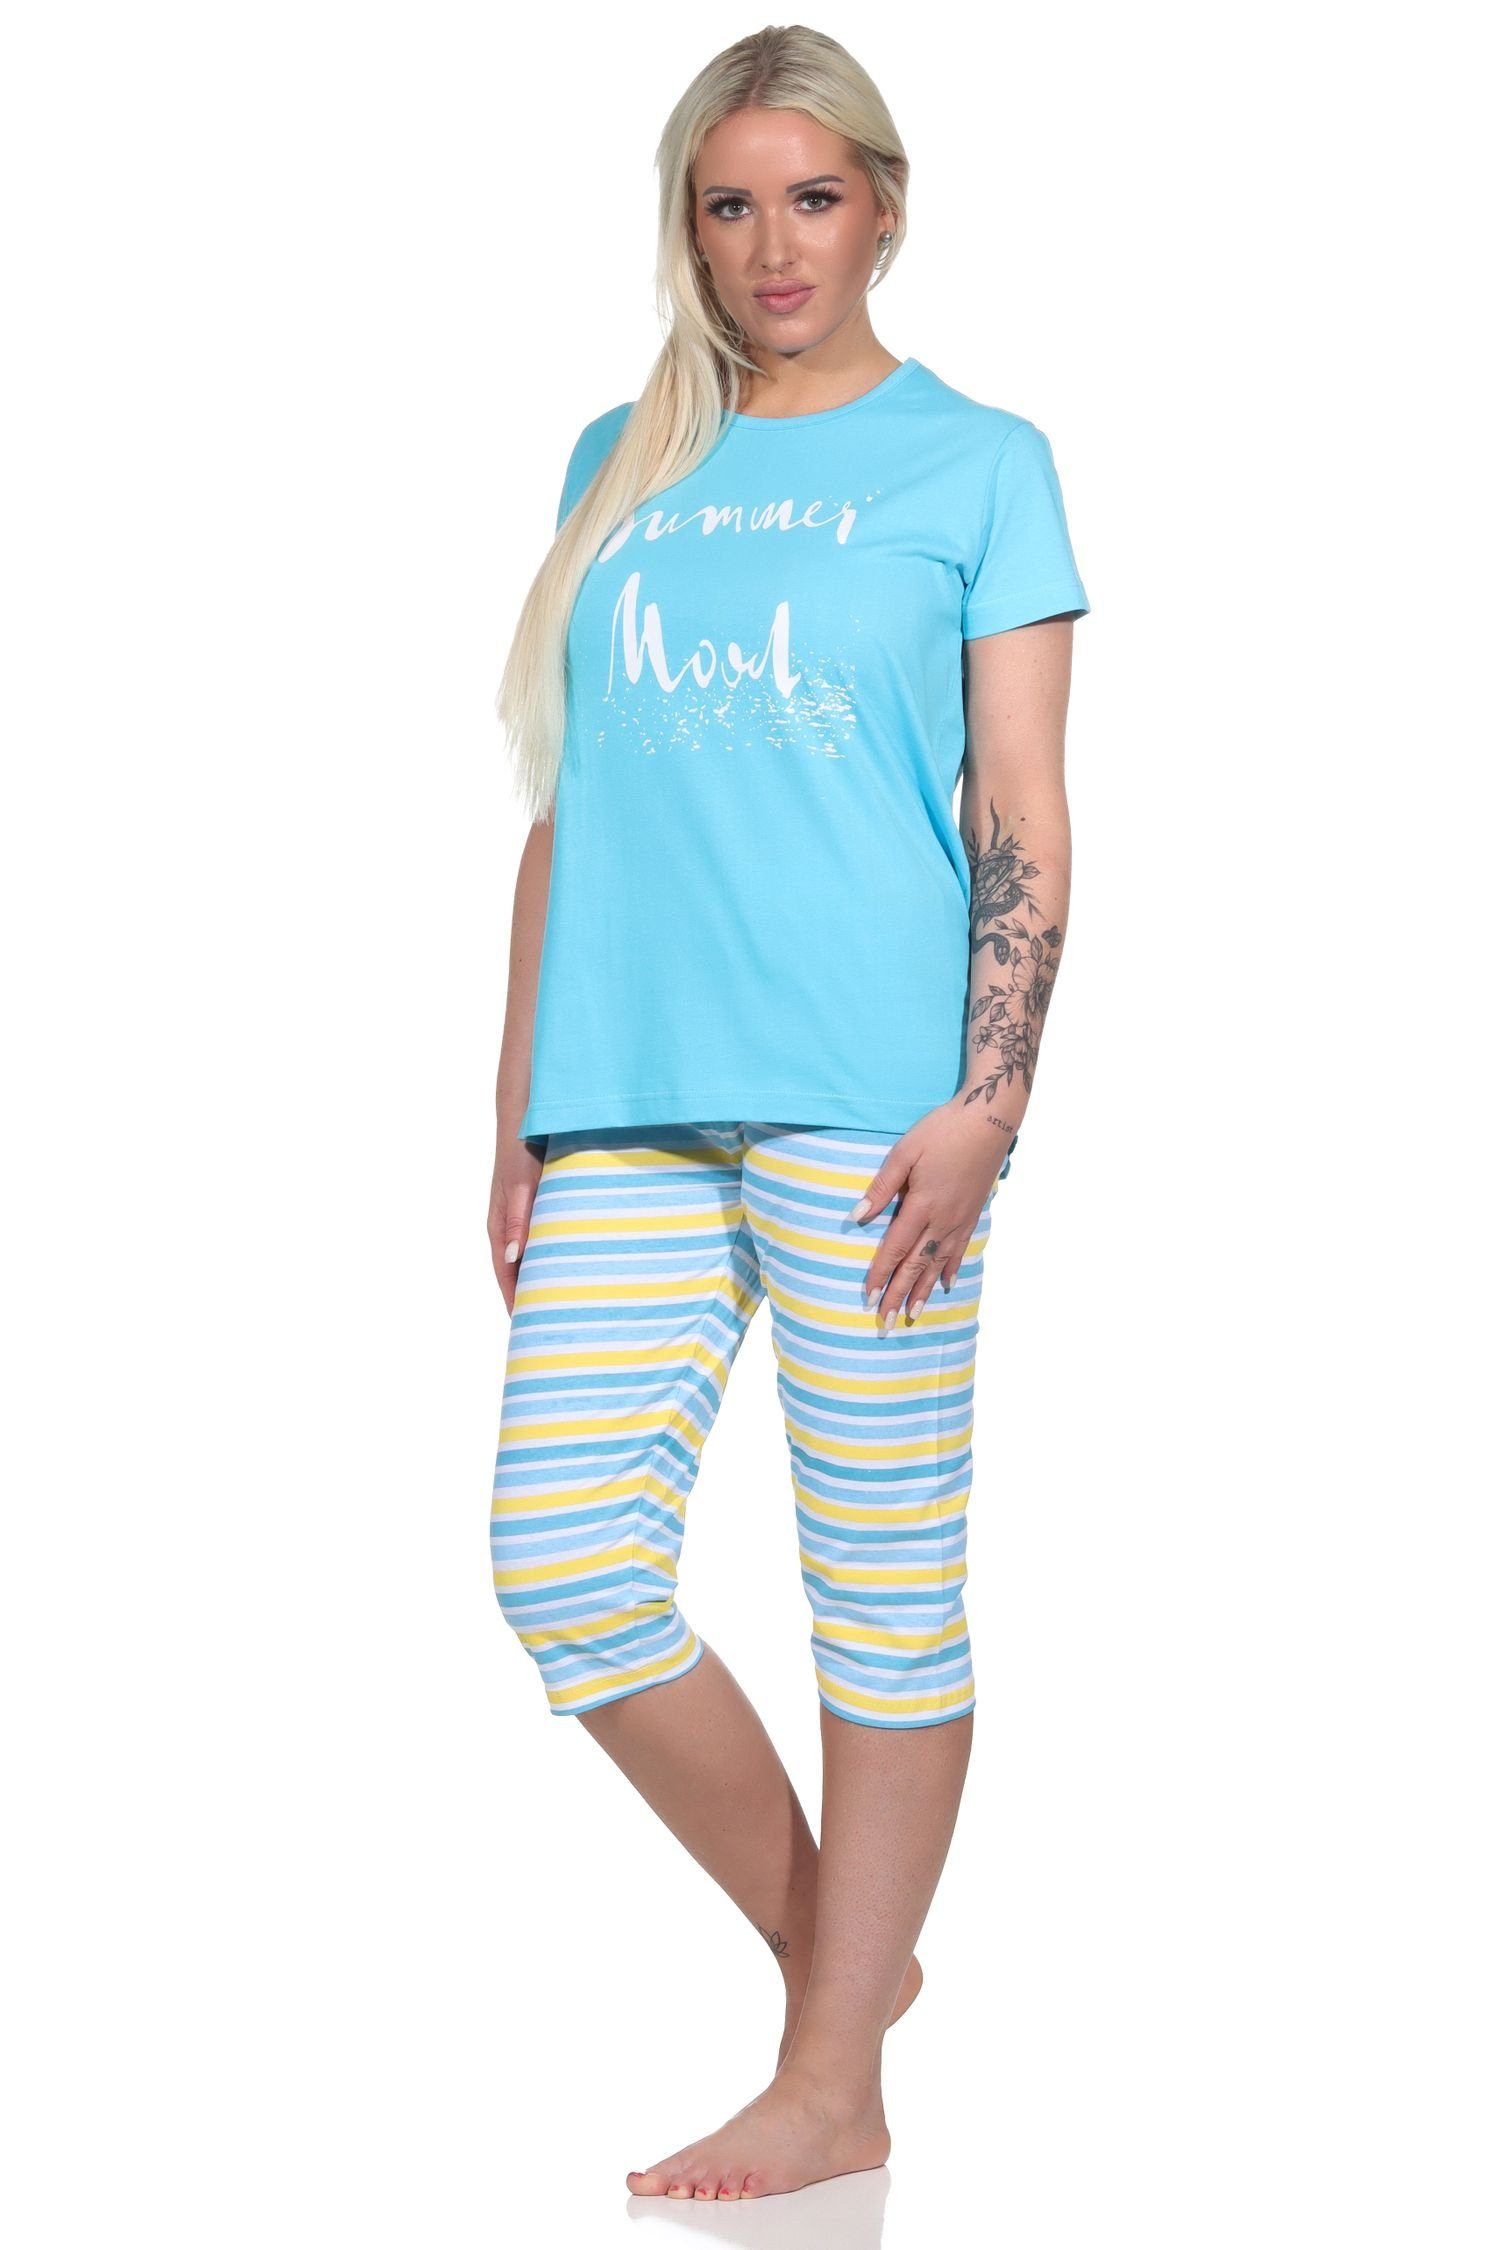 Hose geringelt kurzarm Damen Schlafanzug, RELAX Capri Pyjama hellblau Sommerlicher Normann Pyjama by